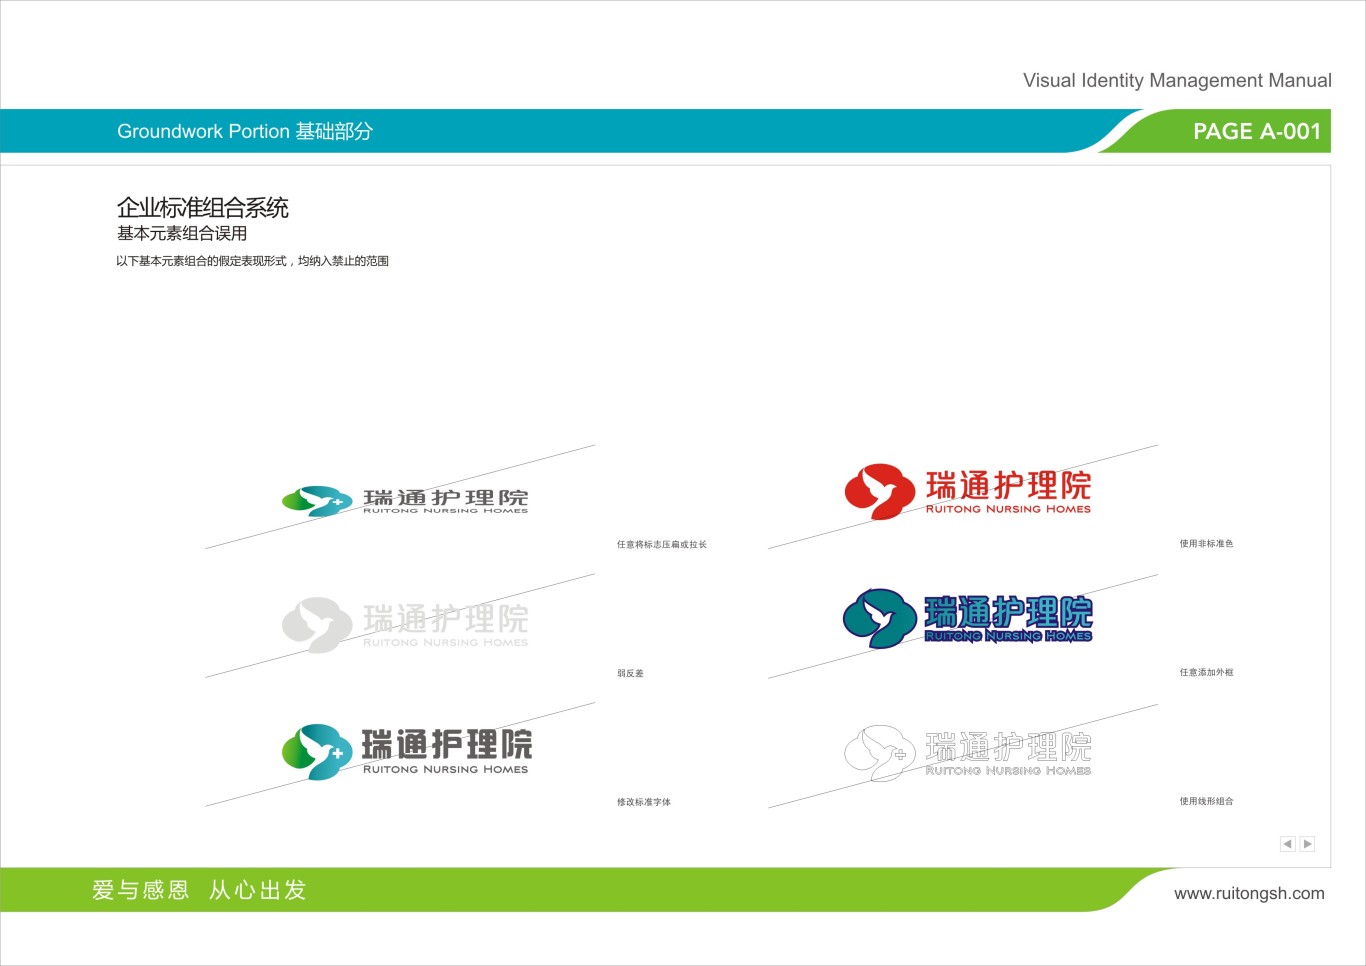 上海瑞通护理院标志VI设计图41